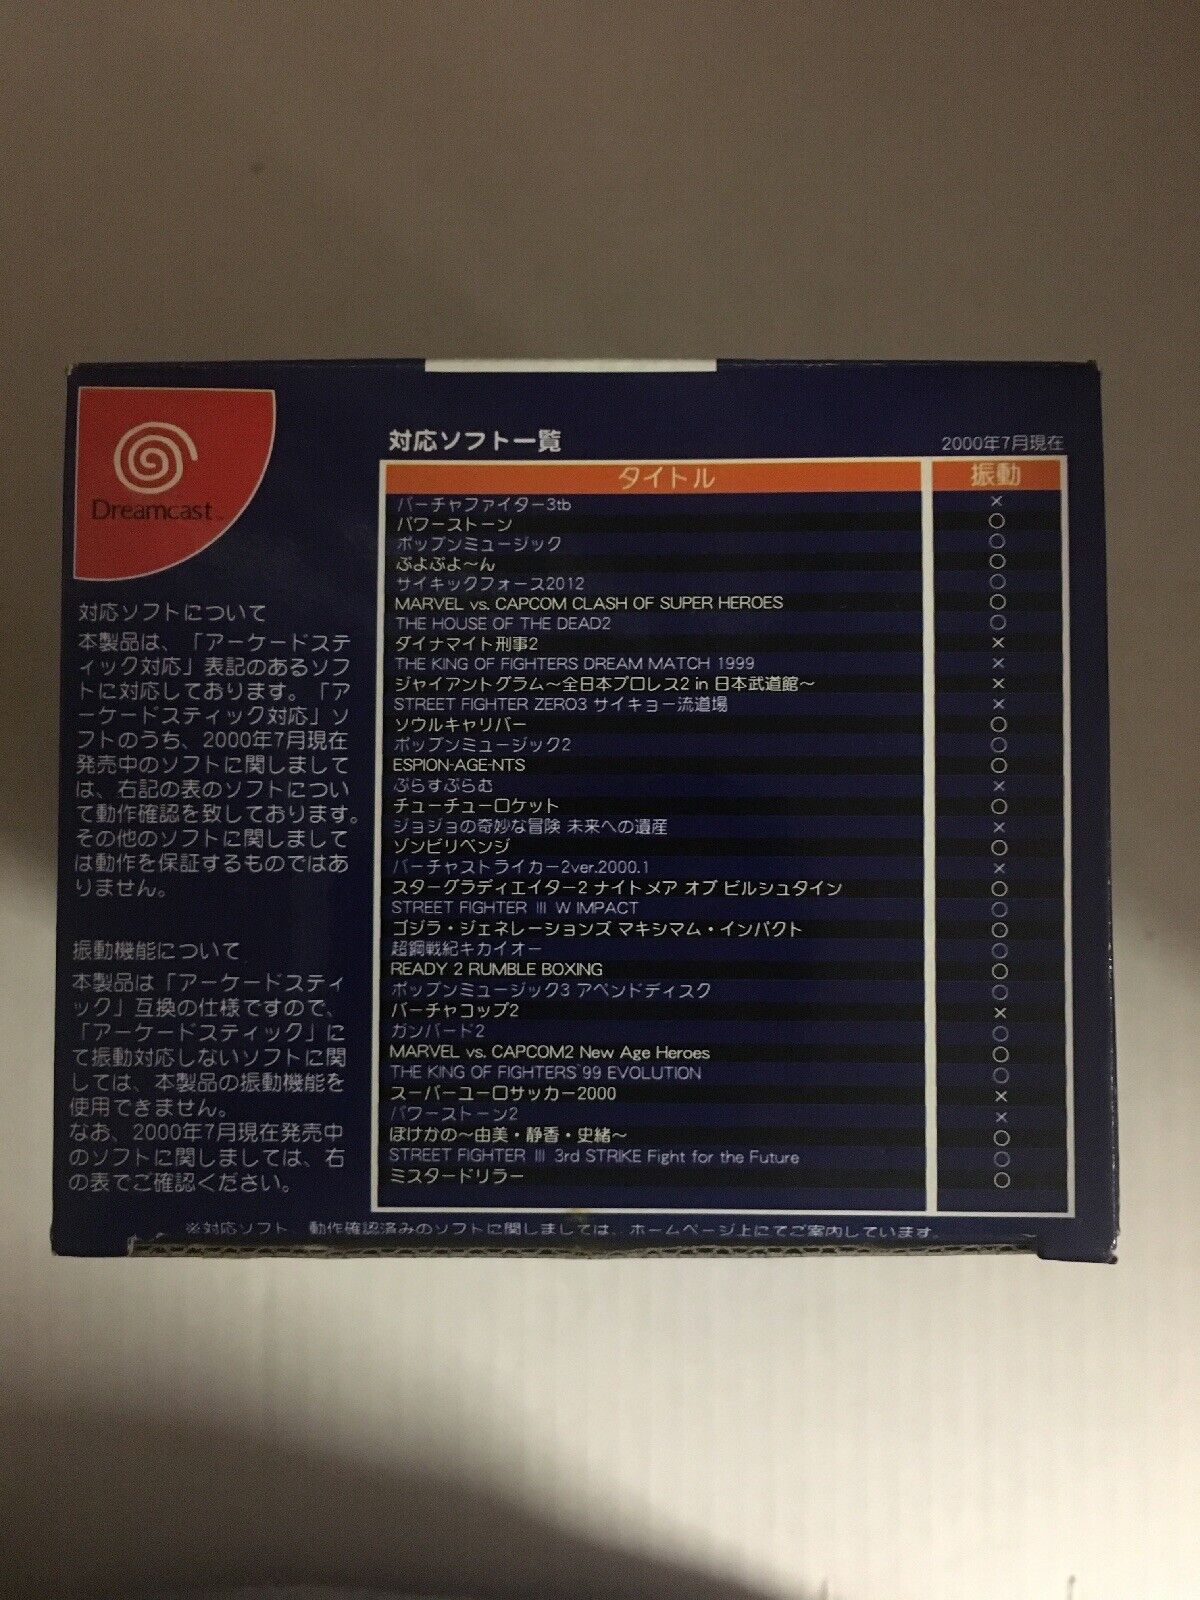 ASCII PAD ET Special SNK VERSION ASC-1301K Dreamcast Capcom vs SNK RARE MINT CIB